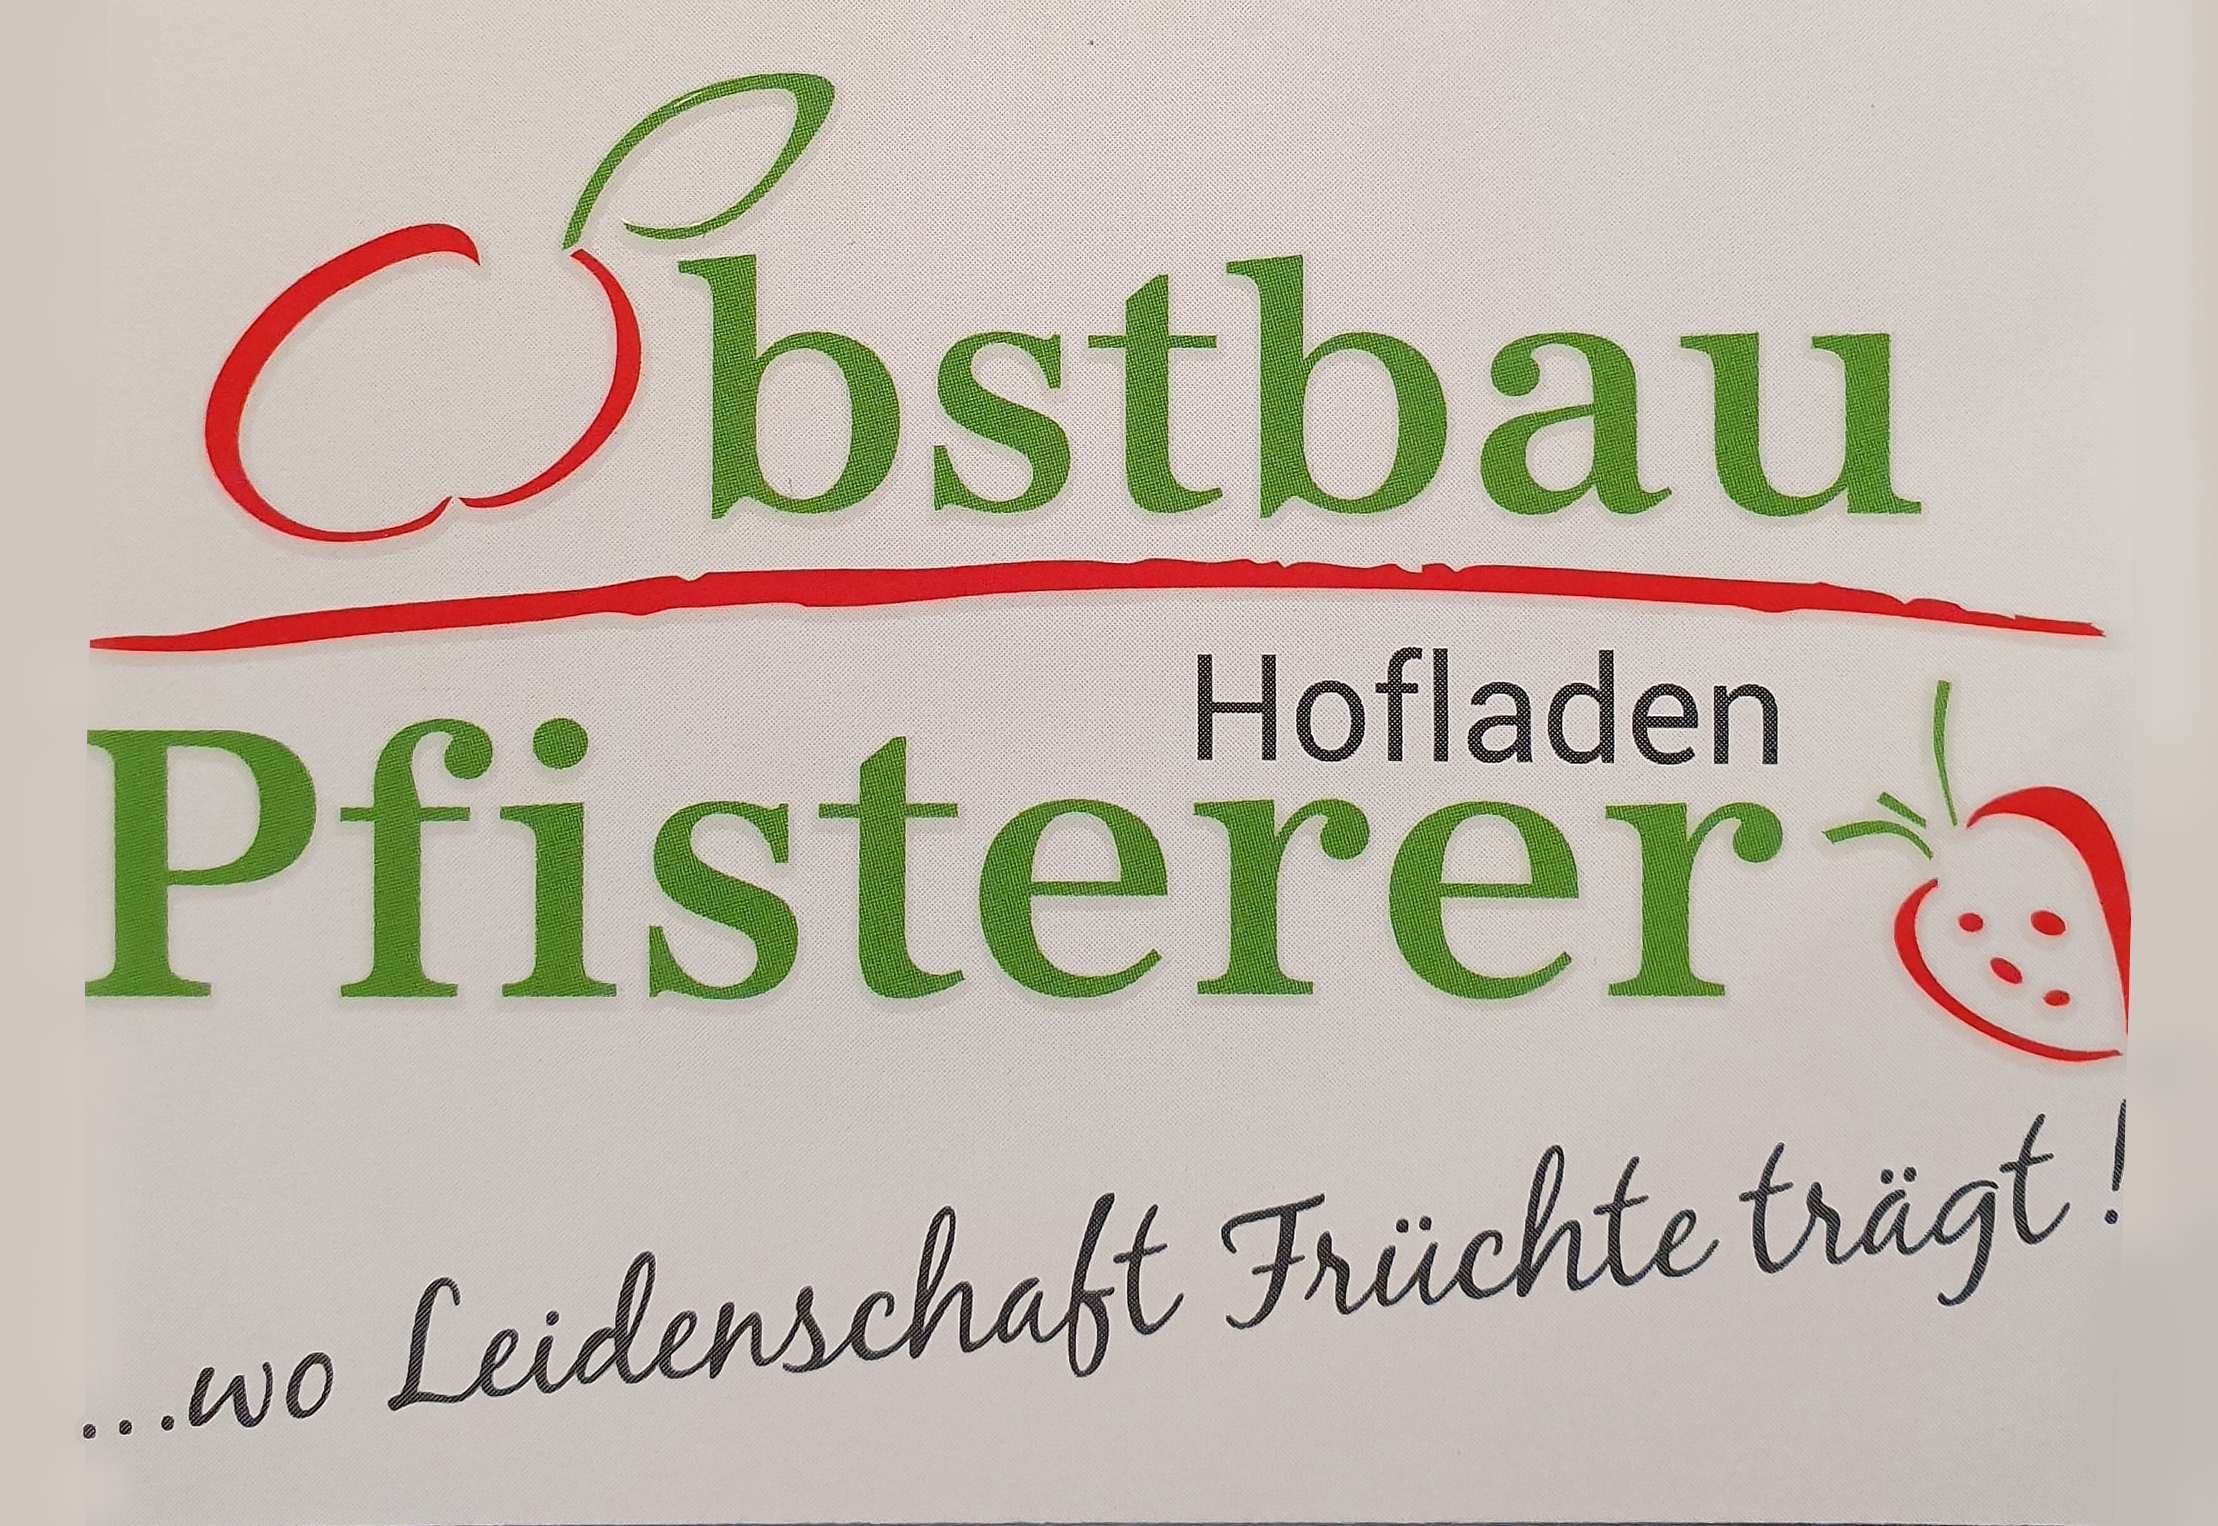 Pfisterer_Logo_Hofladen